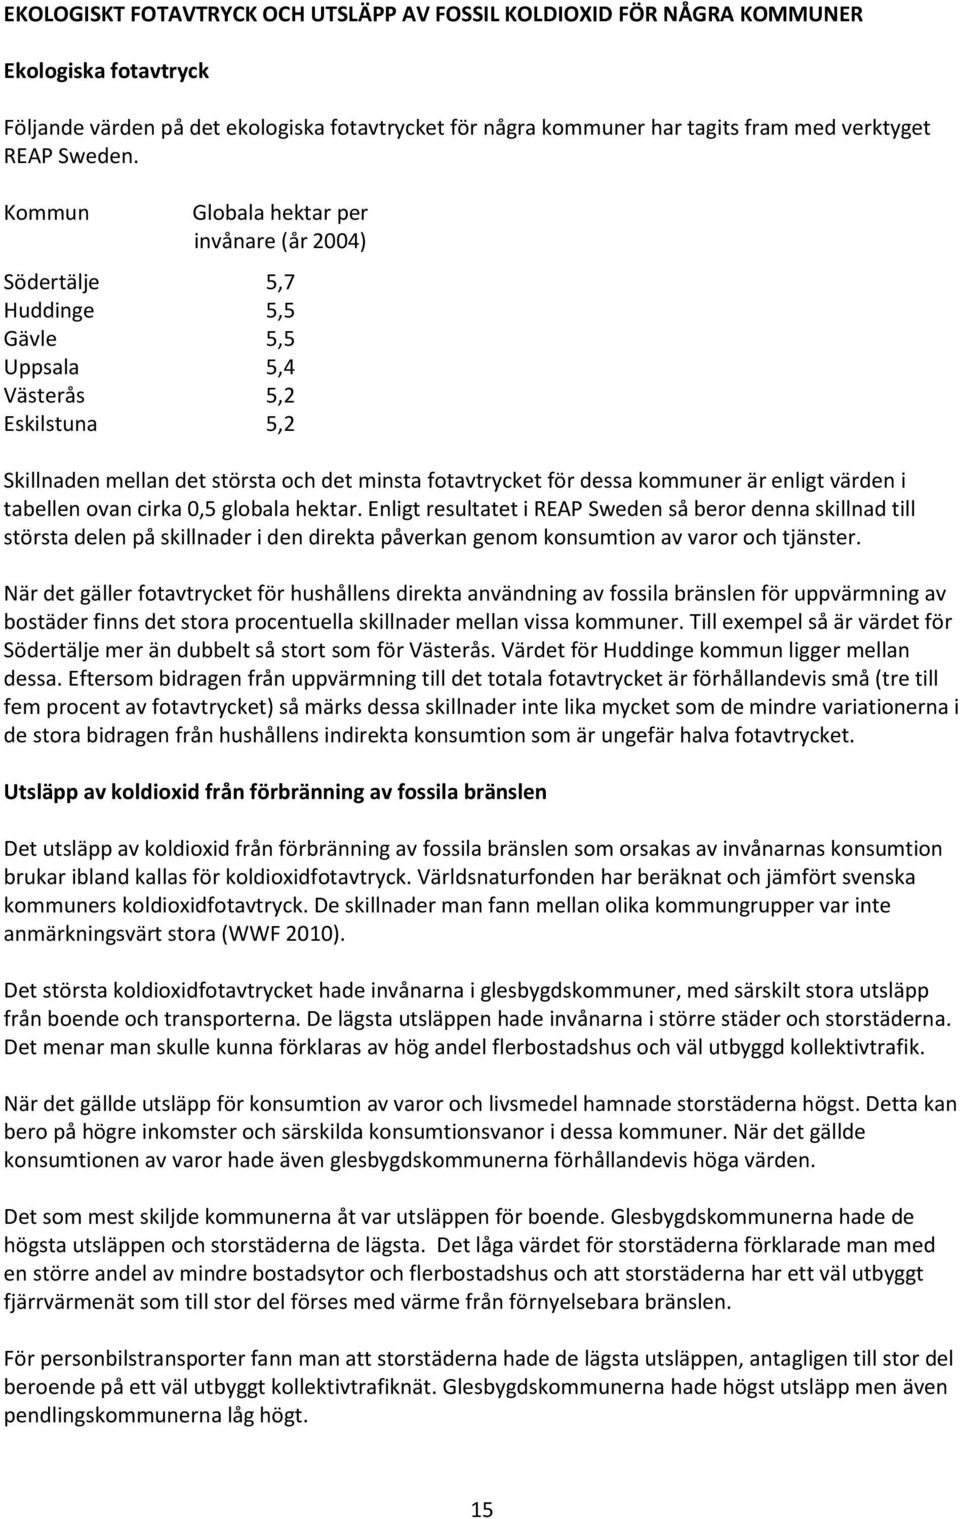 Kommun Globala hektar per invånare (år 2004) Södertälje 5,7 Huddinge 5,5 Gävle 5,5 Uppsala 5,4 Västerås 5,2 Eskilstuna 5,2 Skillnaden mellan det största och det minsta fotavtrycket för dessa kommuner